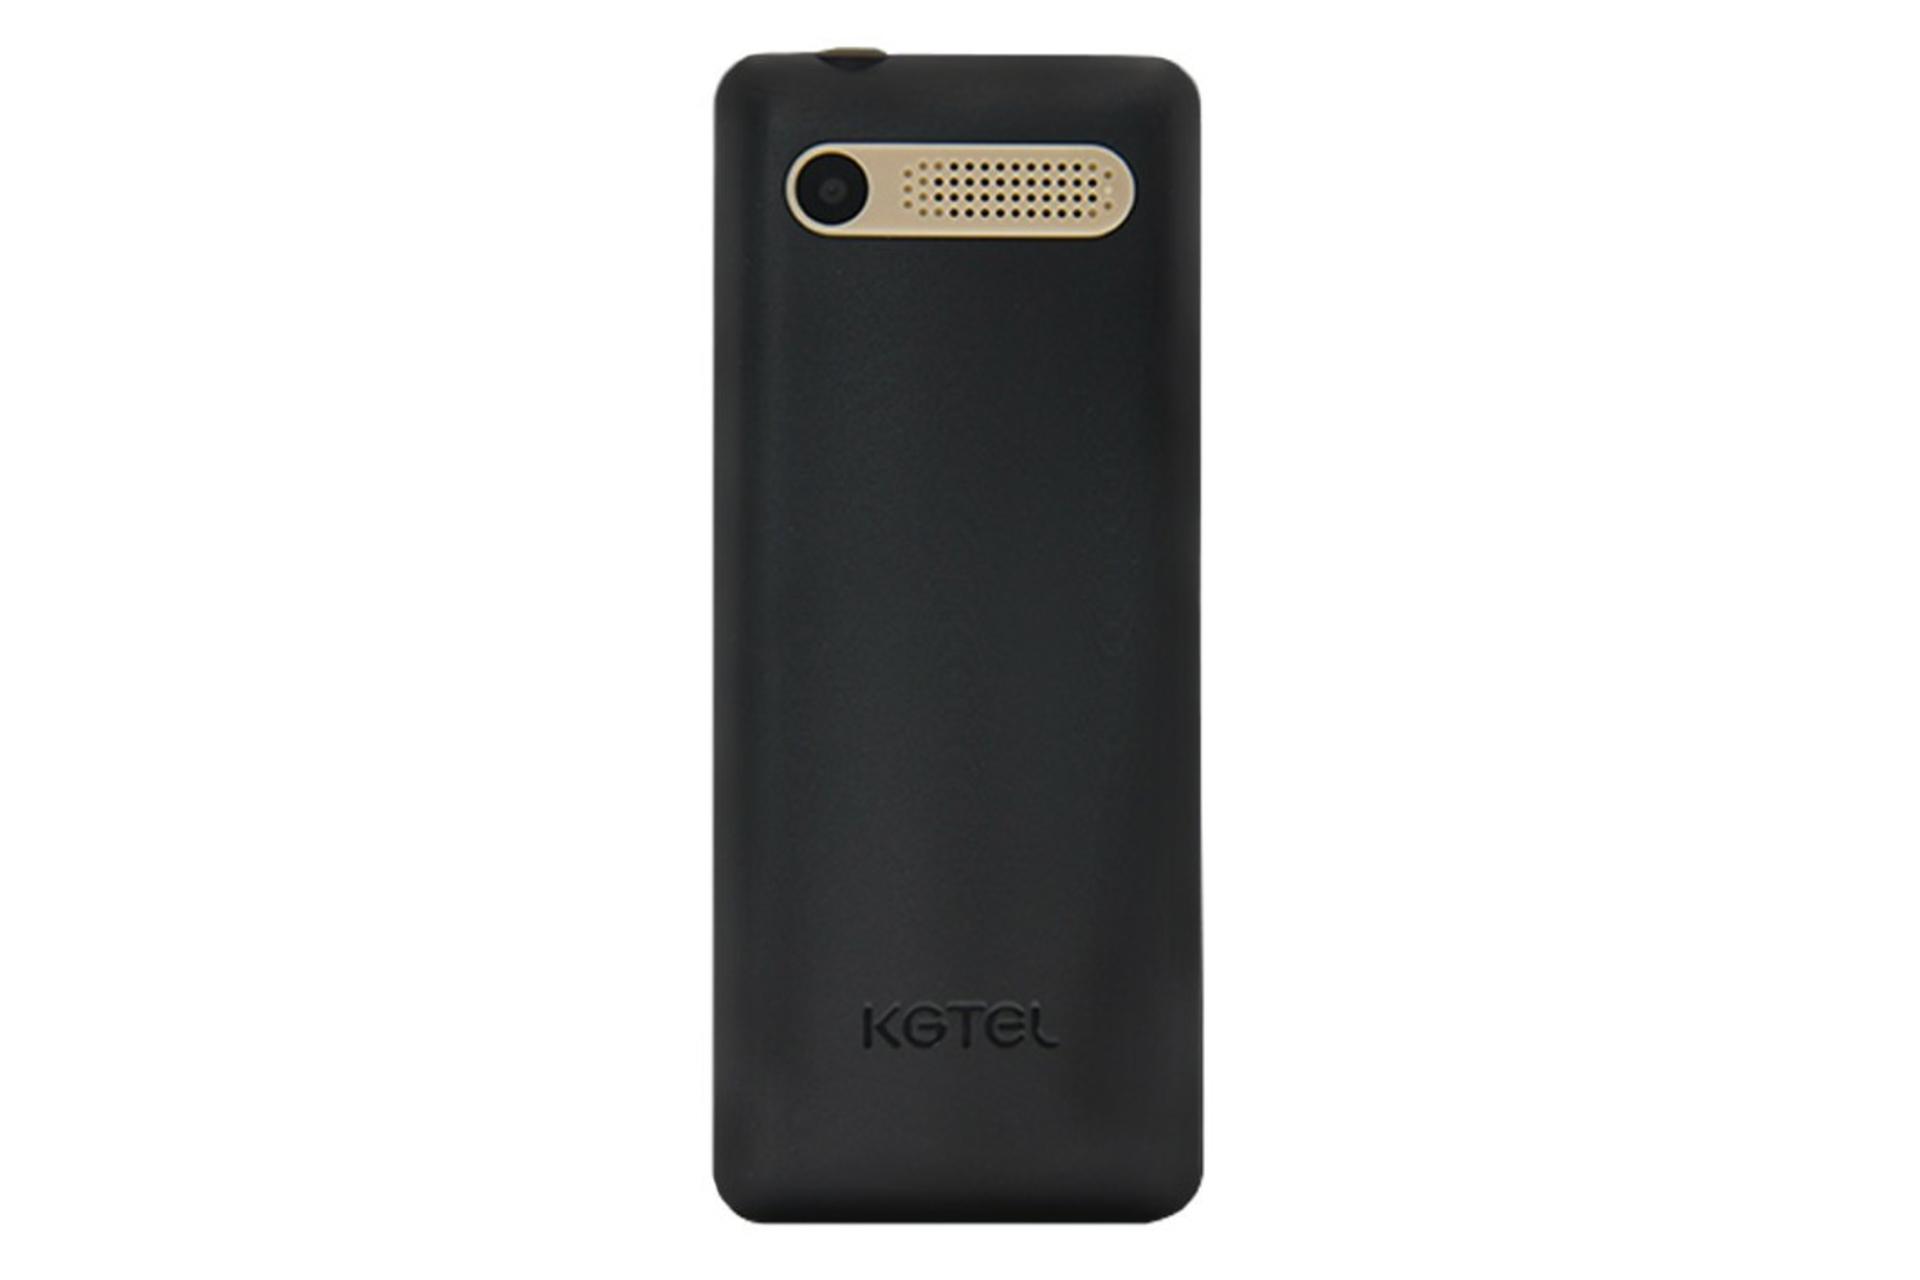 پنل پشت گوشی موبایل کاجیتل KGTEL K40